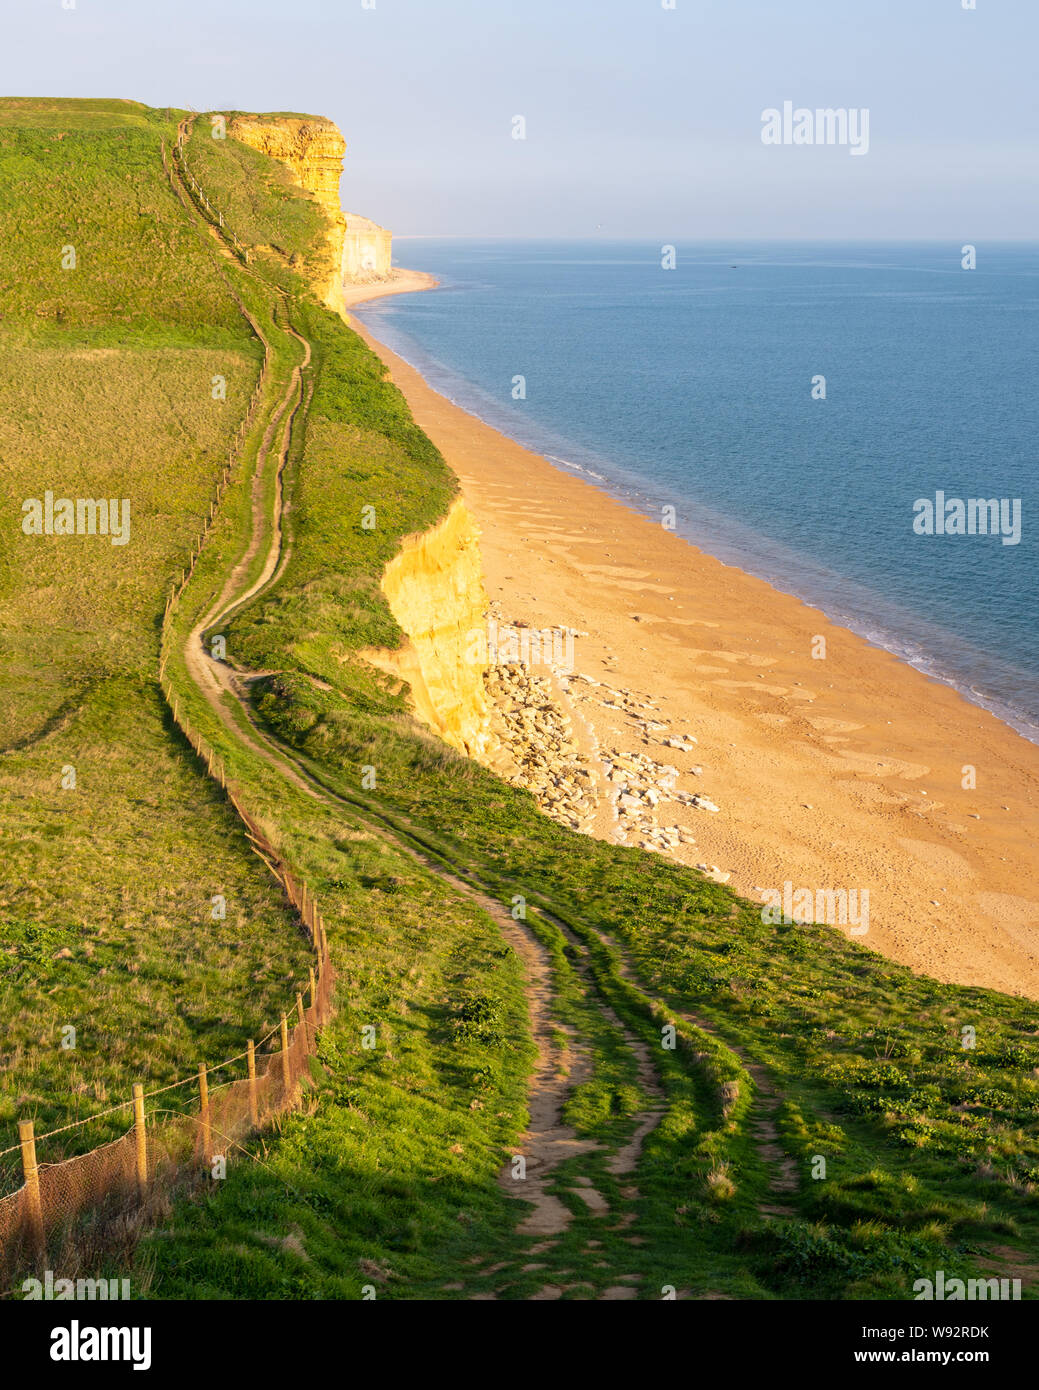 Le South West Coast Path train randonnée traverse de falaises de grès de West Bay, sur la côte jurassique du Dorset. Banque D'Images